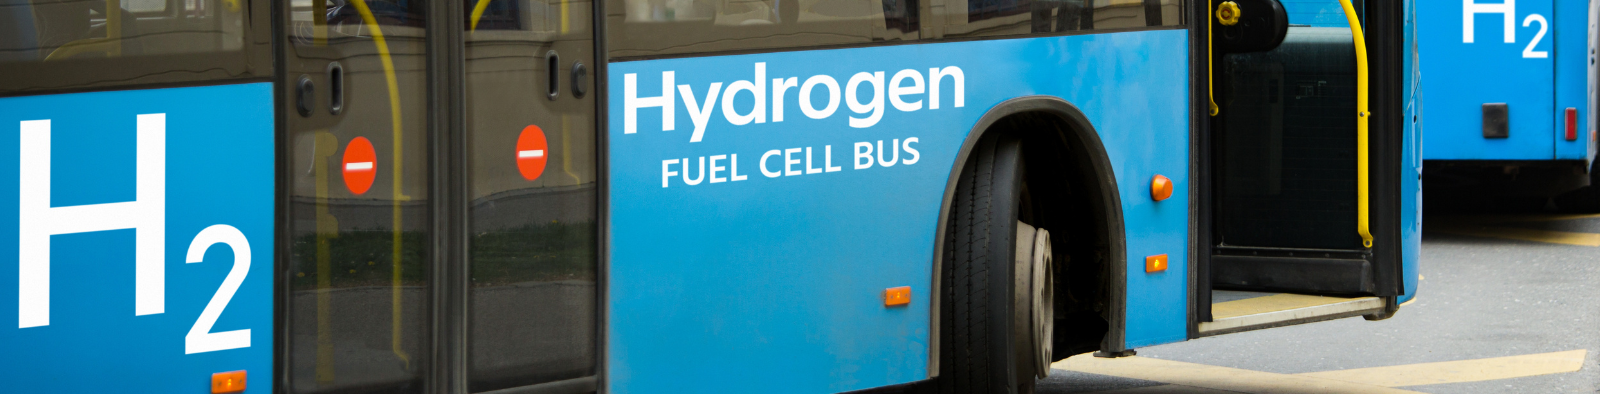 bus running on hydrogen